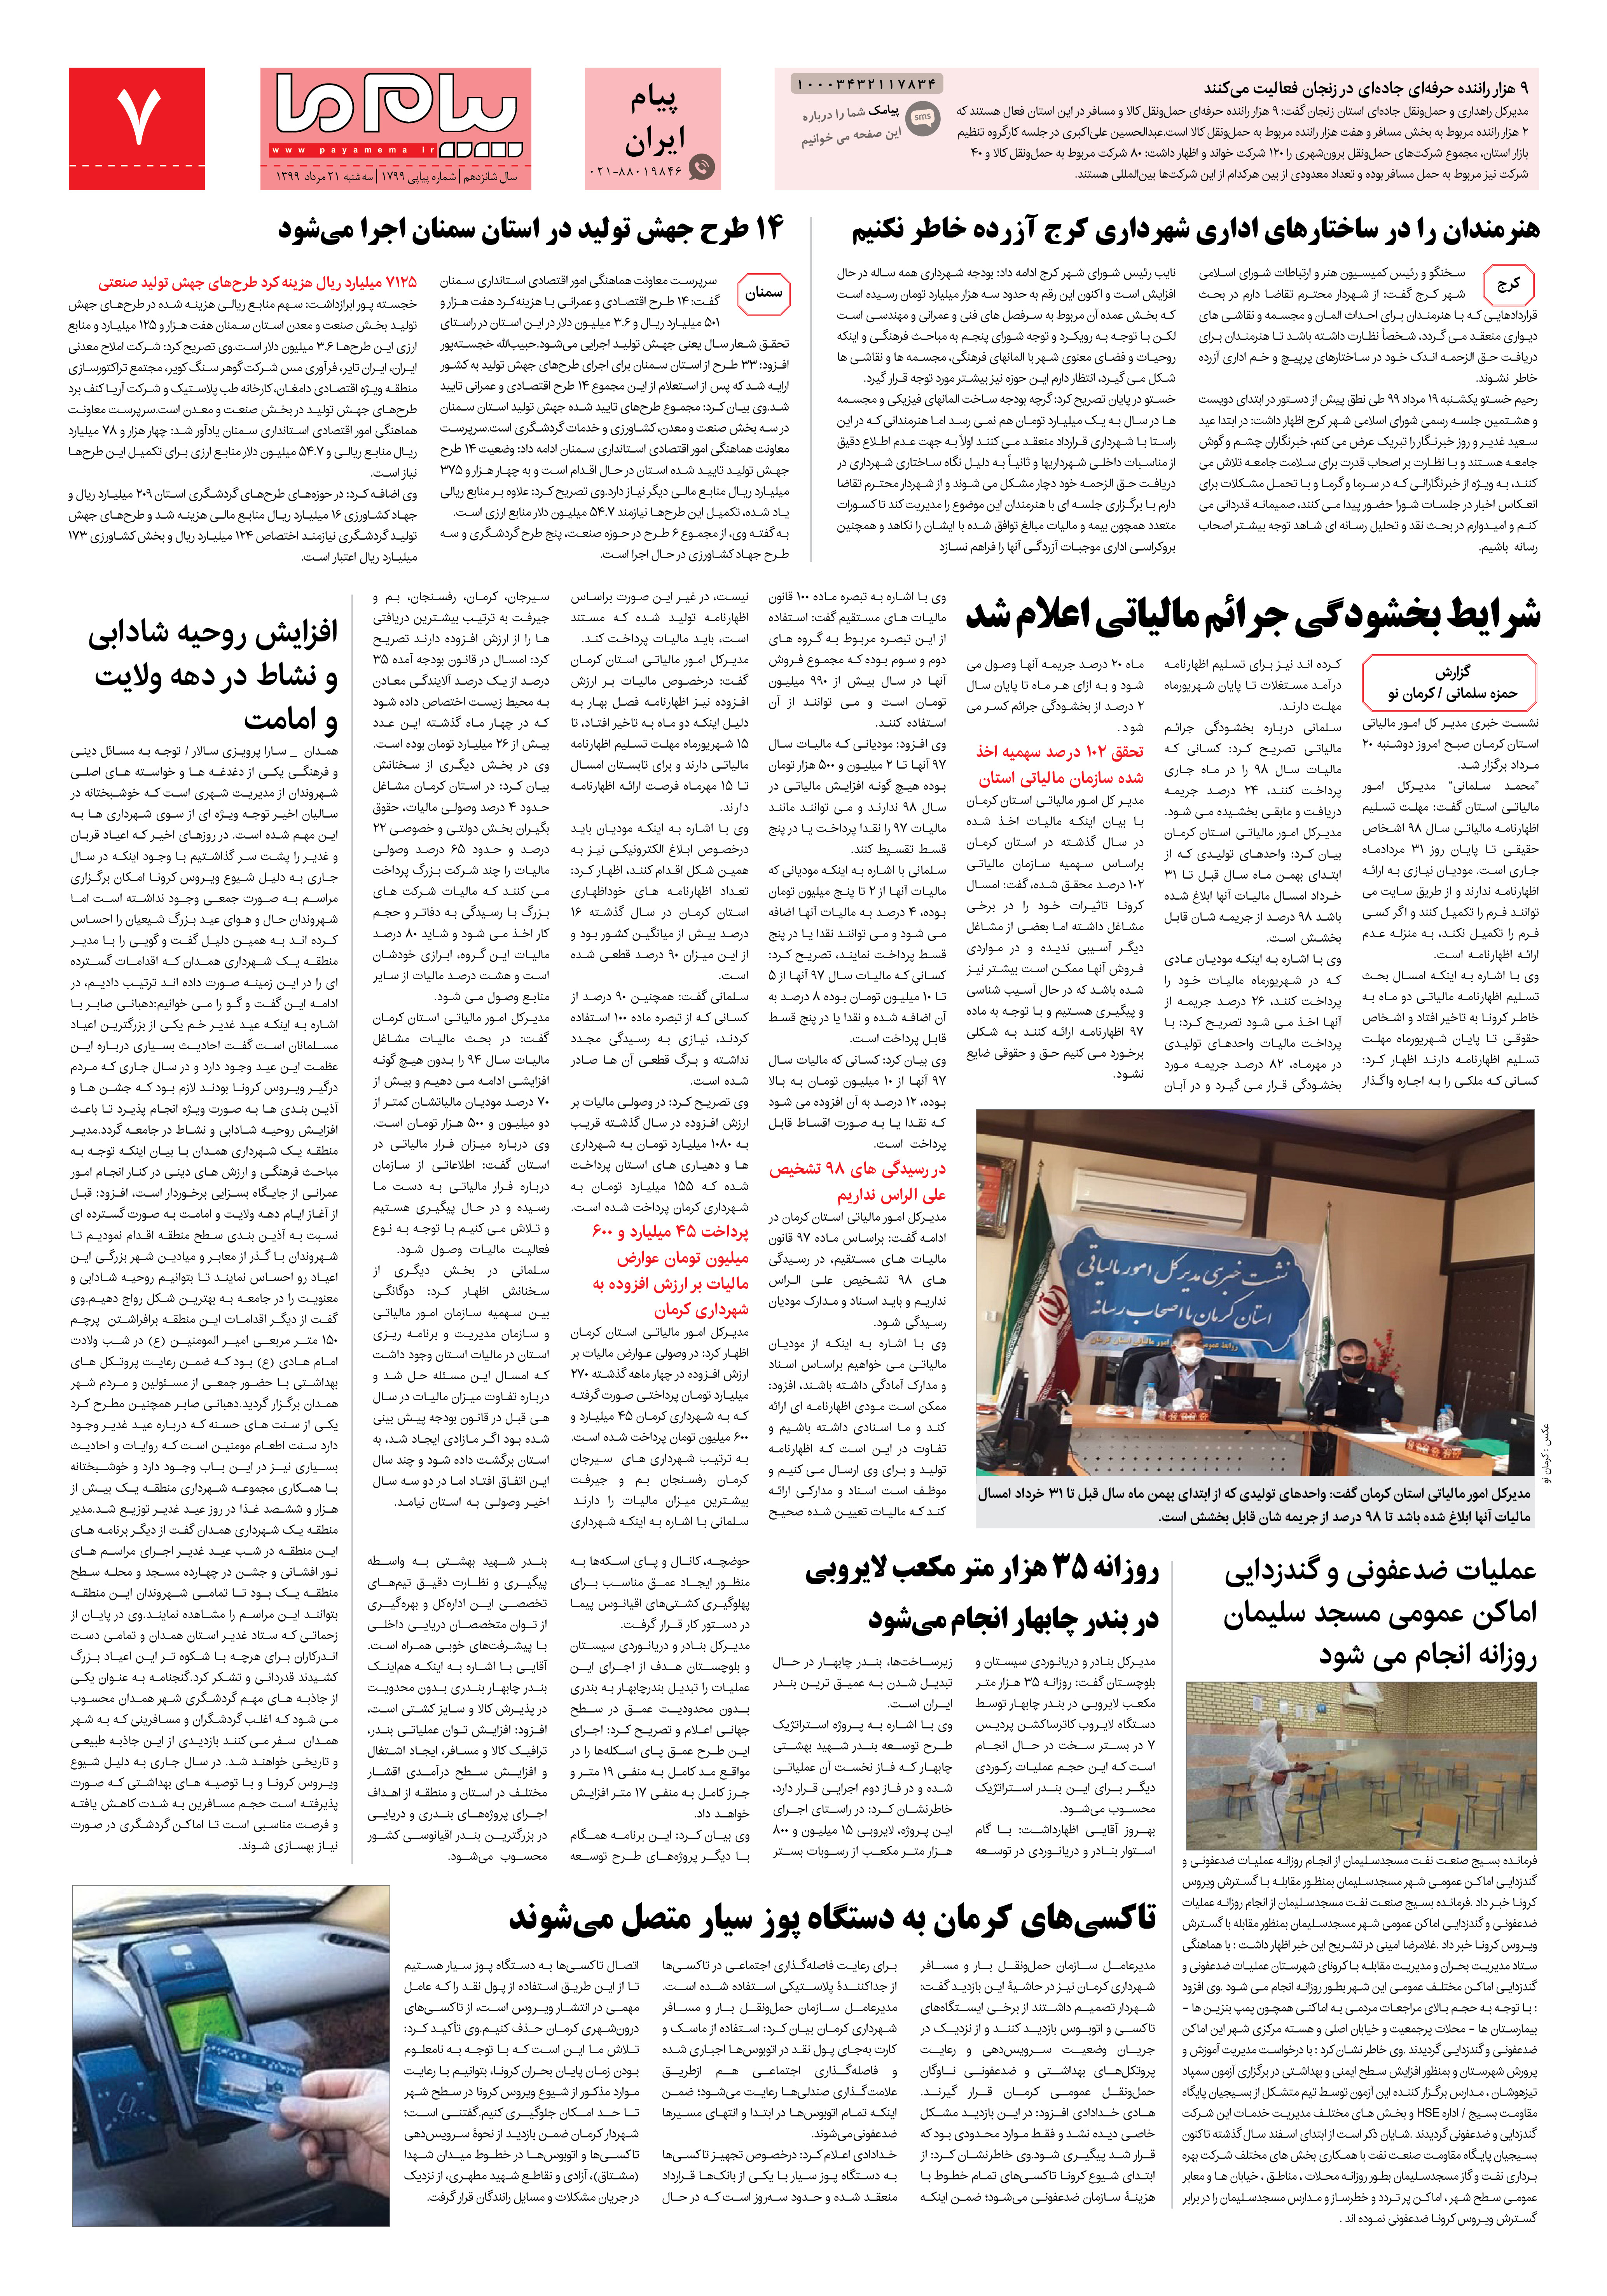 صفحه پیام ایران شماره 1799 روزنامه پیام ما